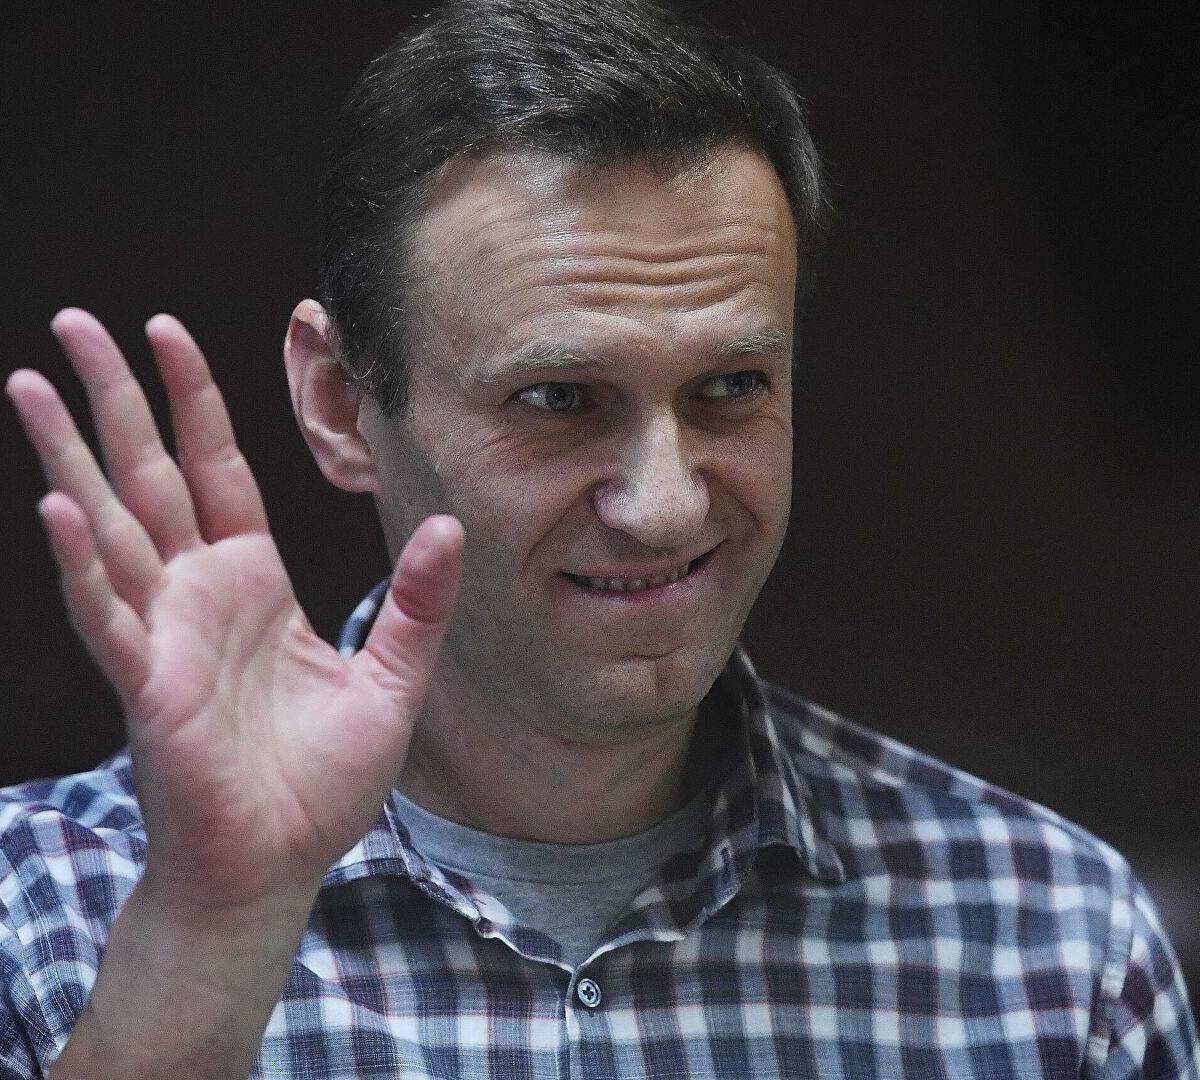 Закат организации: эксперты о перспективах ФБК без Навального